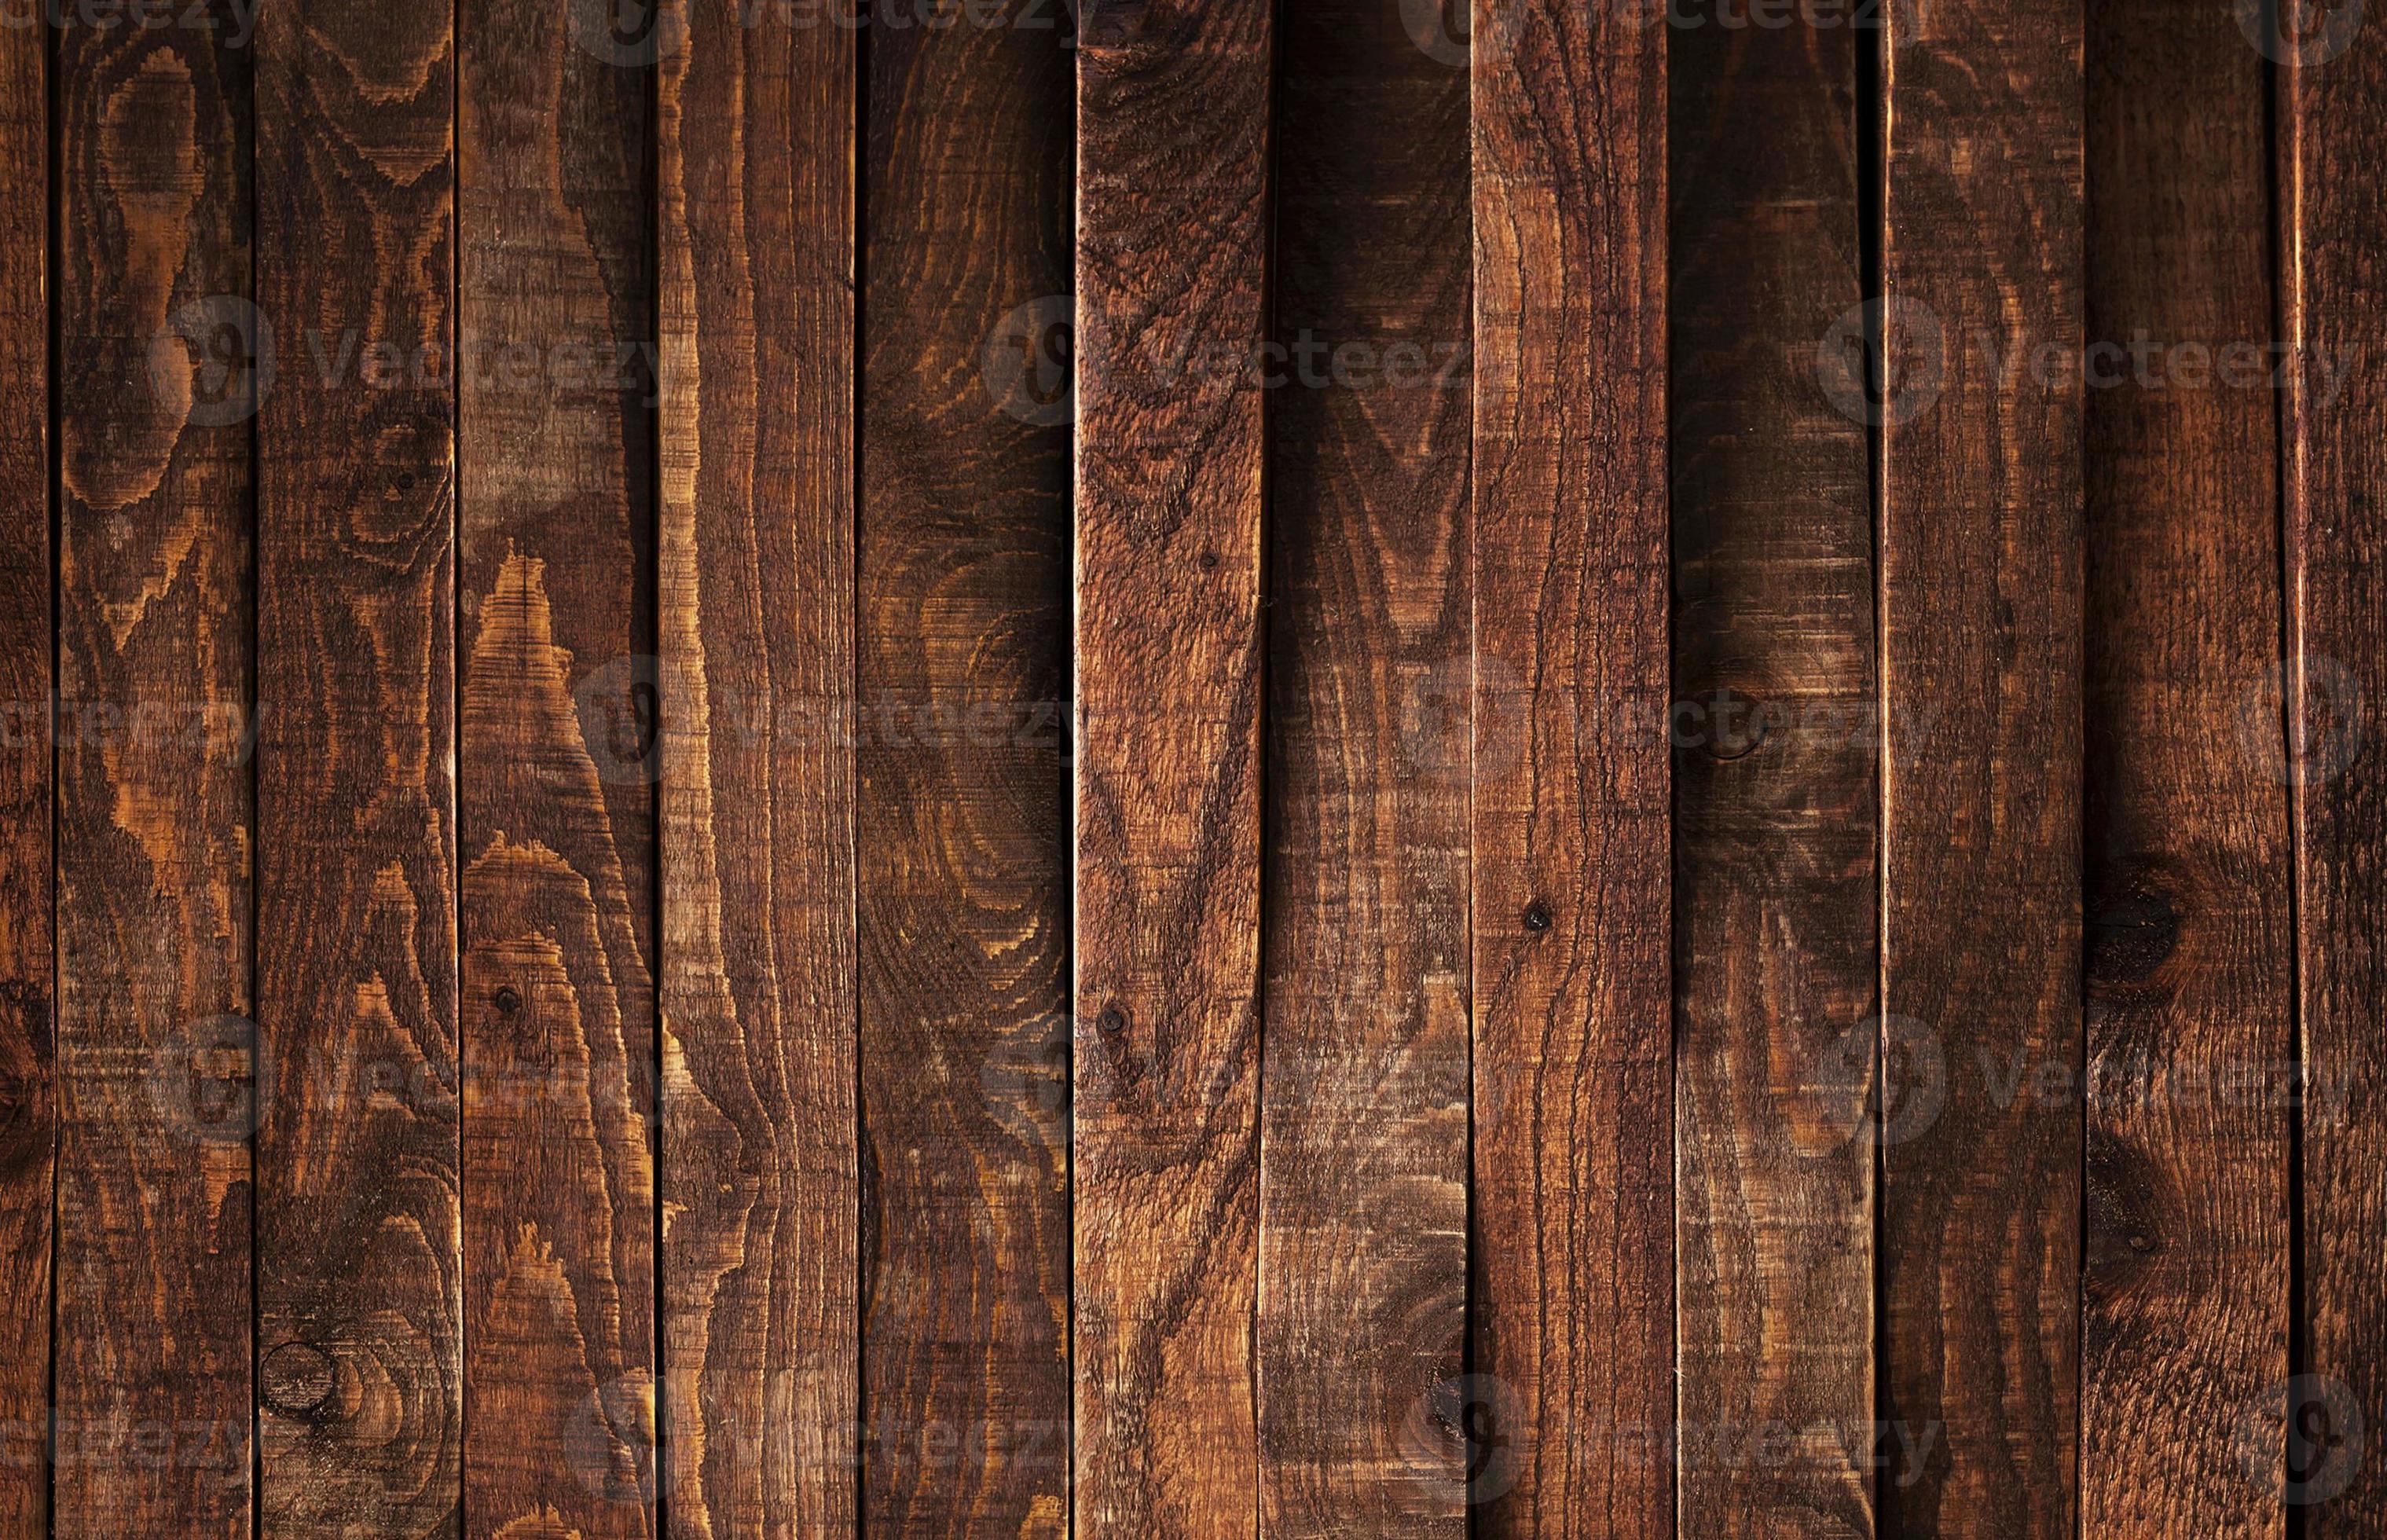 Hình nền gỗ mộc có khả năng mang lại cảm giác ấm áp và thân thiện cho mọi người. Bạn có thể tạo bức ảnh mang đậm phong cách nông thôn với hình ảnh nền gỗ rêu phong.